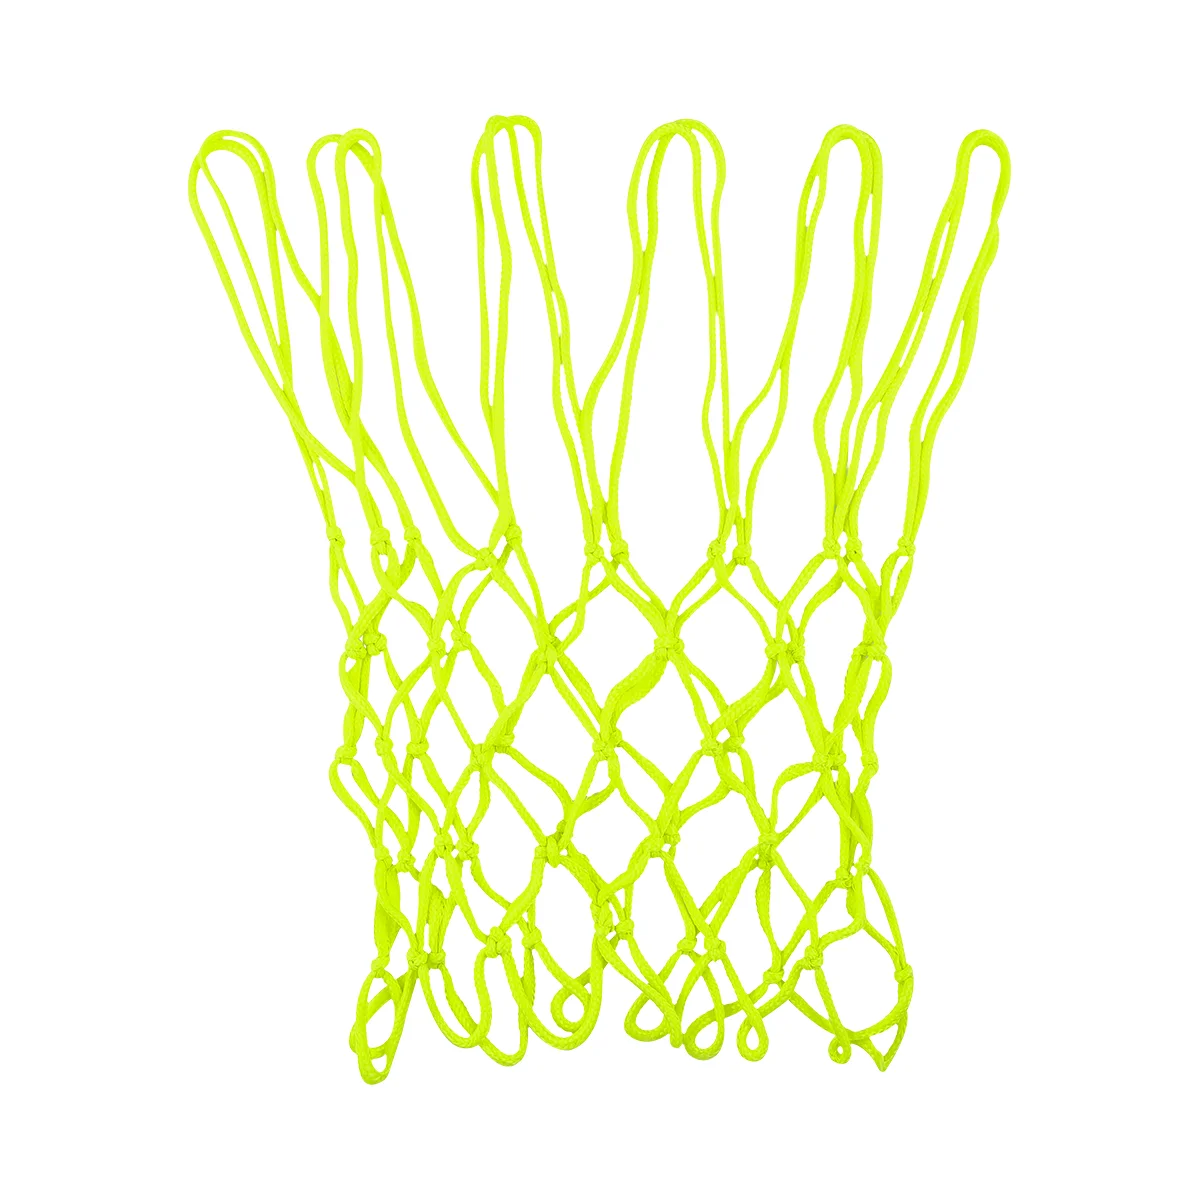 

Светящаяся Ночная баскетбольная сетка VOSAREA, стандартная Профессиональная баскетбольная сетка с нейлоновой оплеткой, плотная сетка для бол...